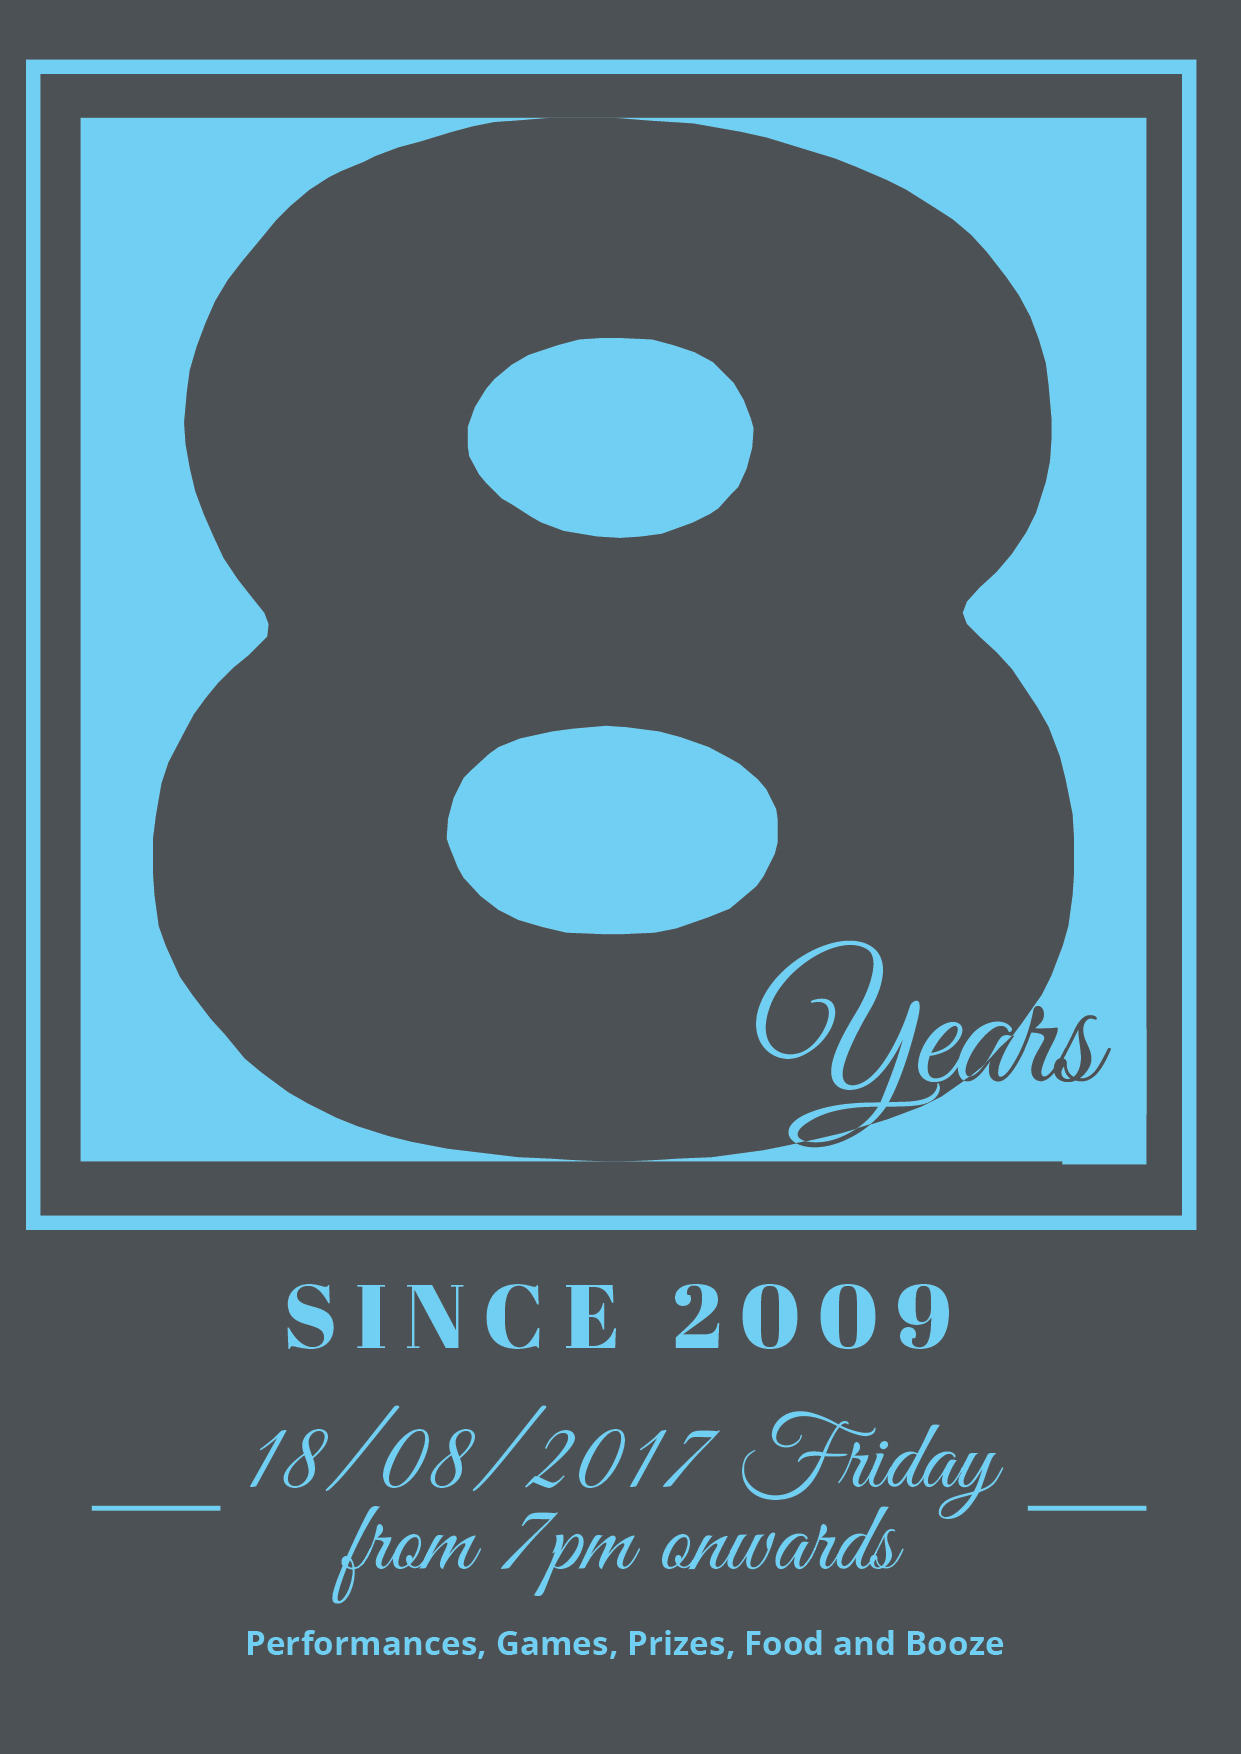 UEC’s 8th Year Anniversary